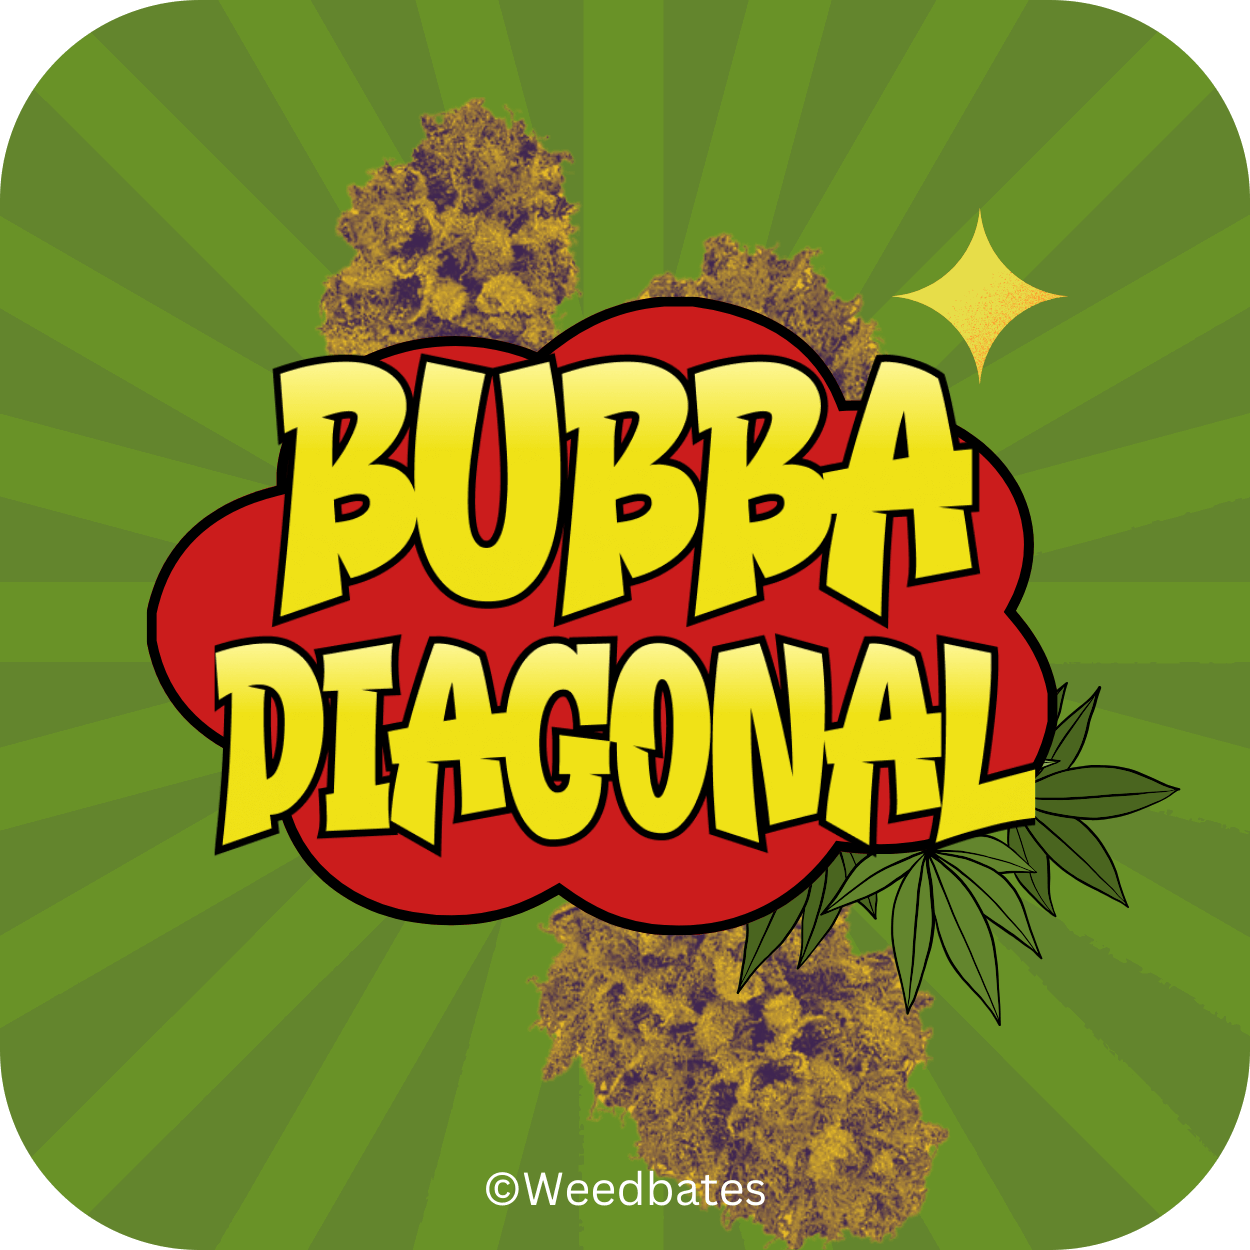 Growing Bubba Diagonal strain